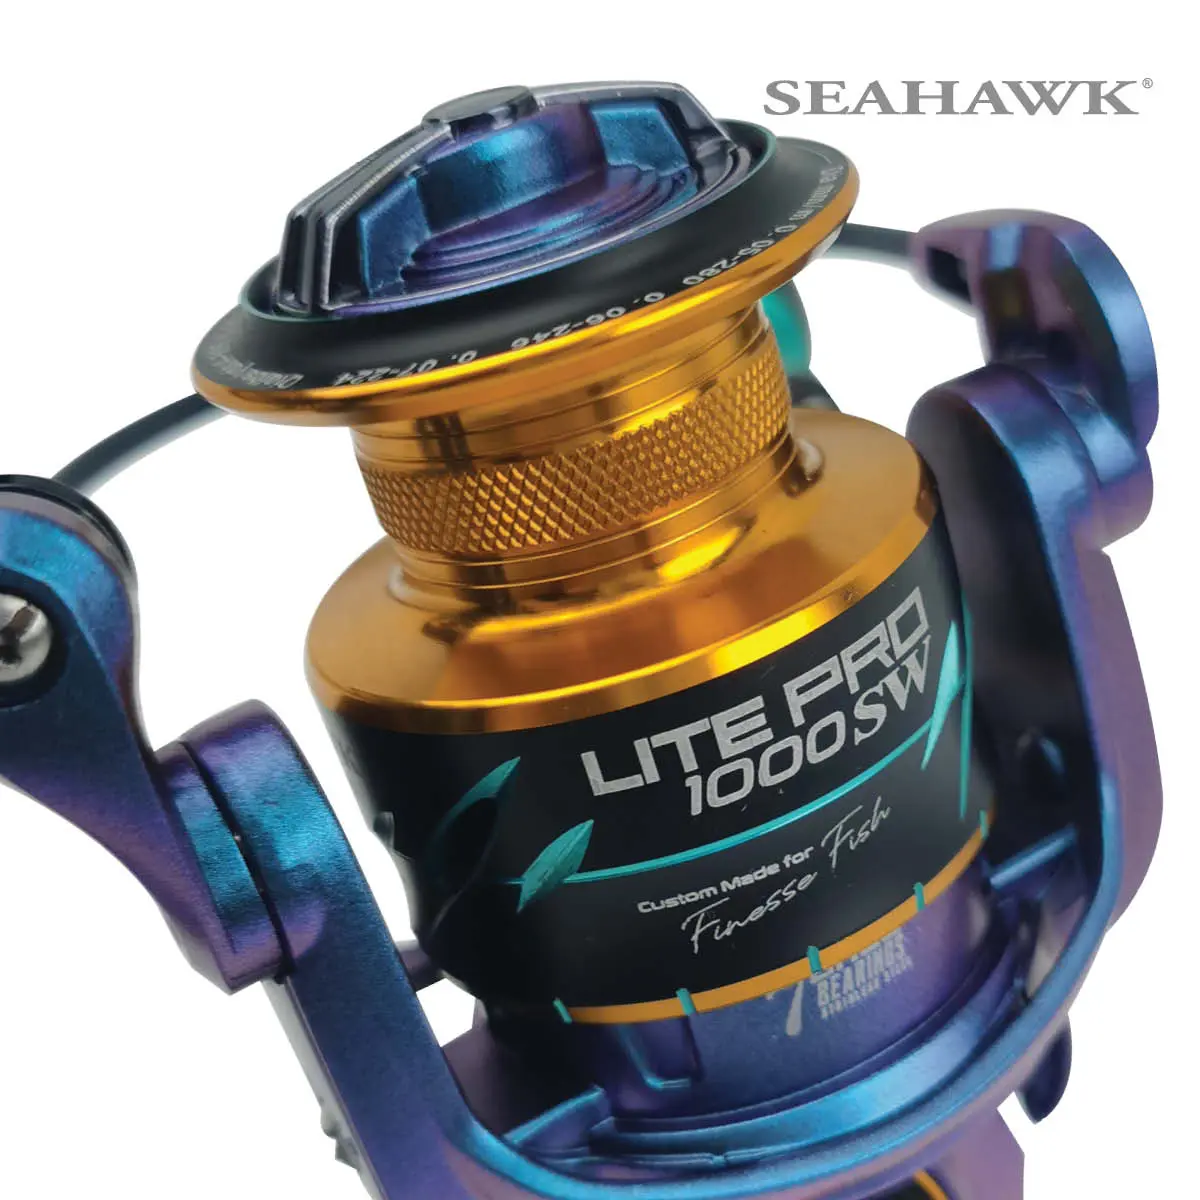 Seahawk Lite Pro SW  Charming Saltwater Ultralight Reel